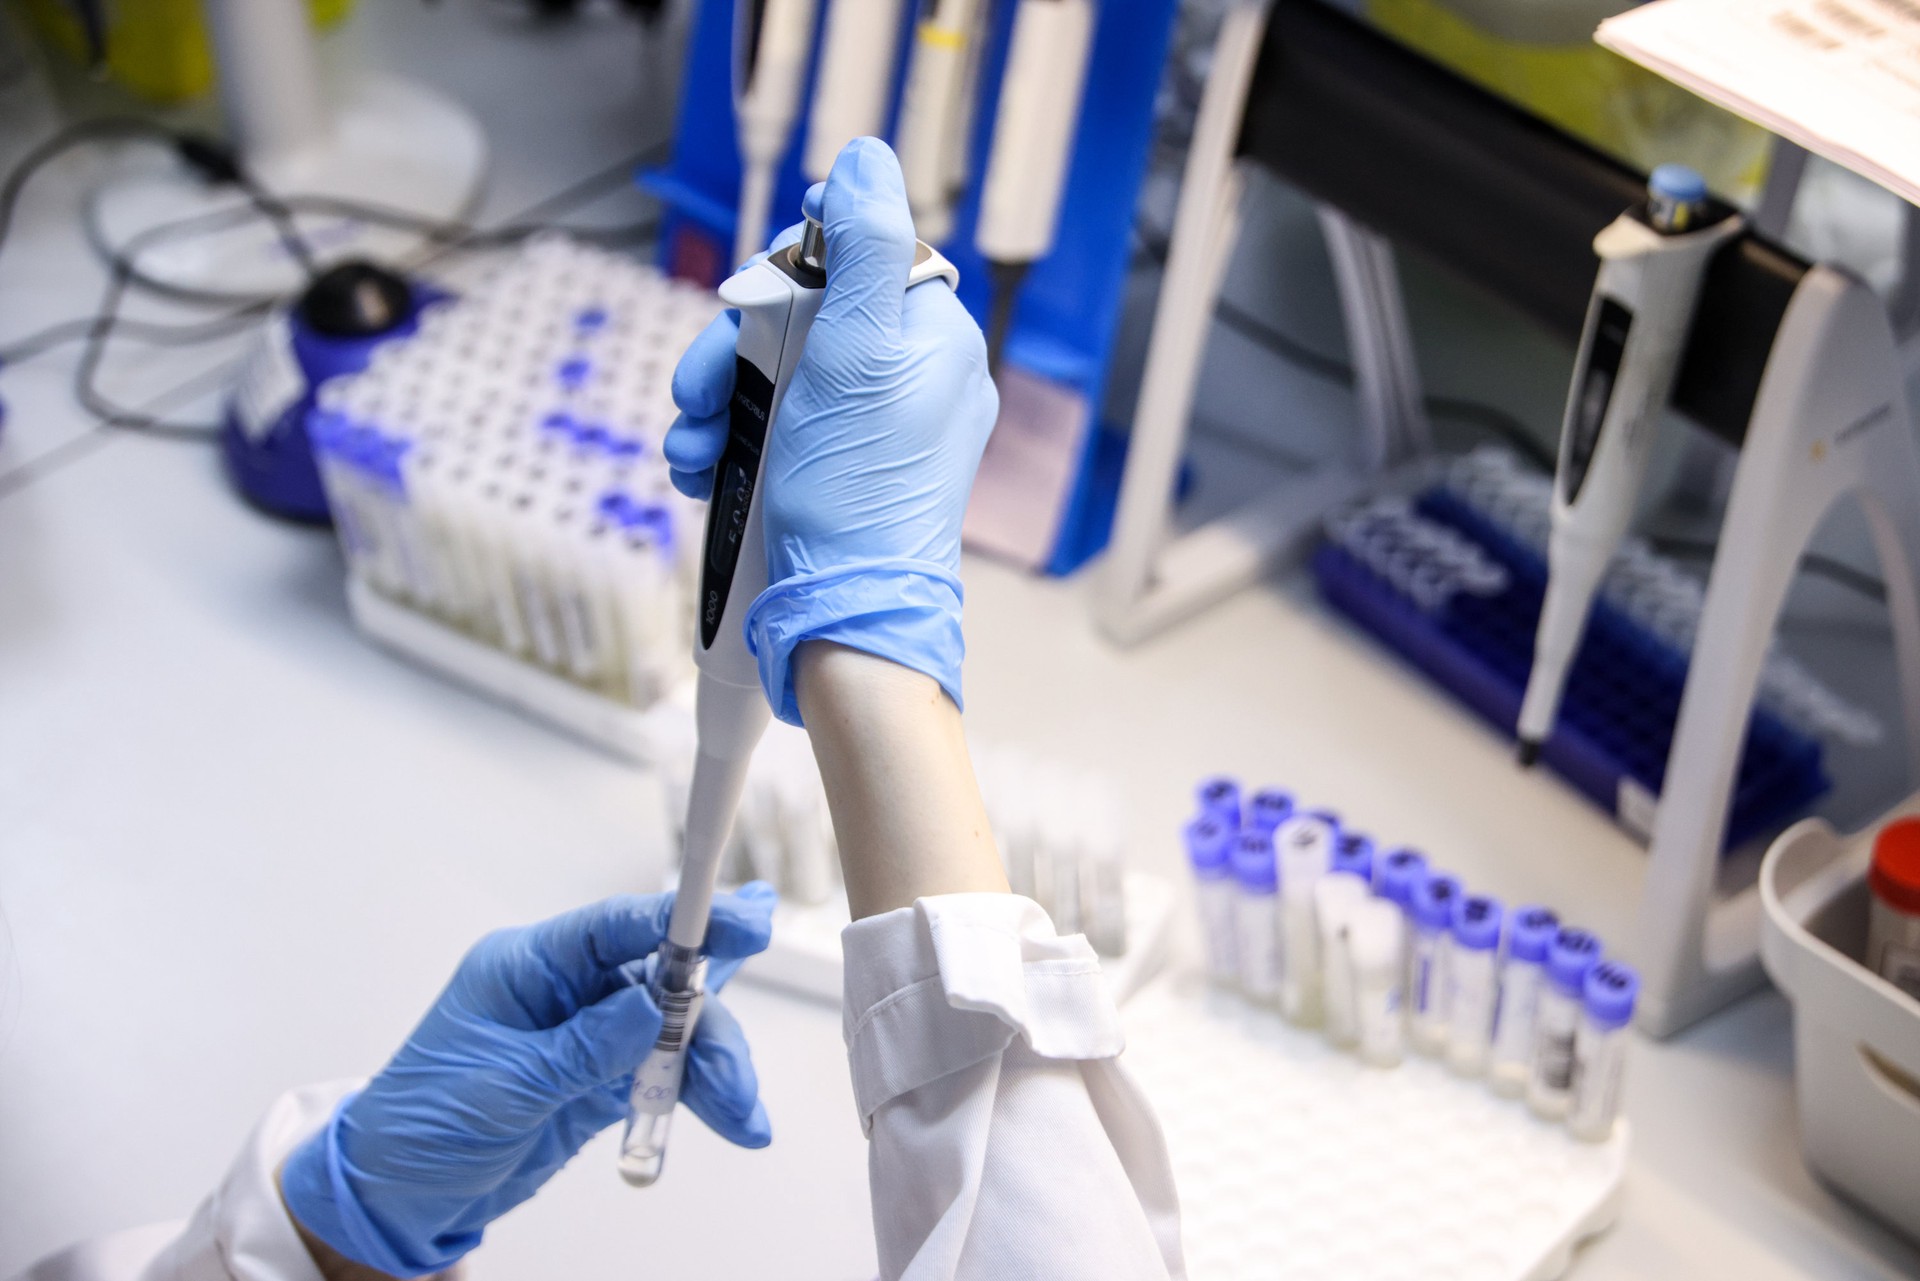 СМИ: В британской лаборатории военные готовят прототипы вакцин против «Болезни Х»